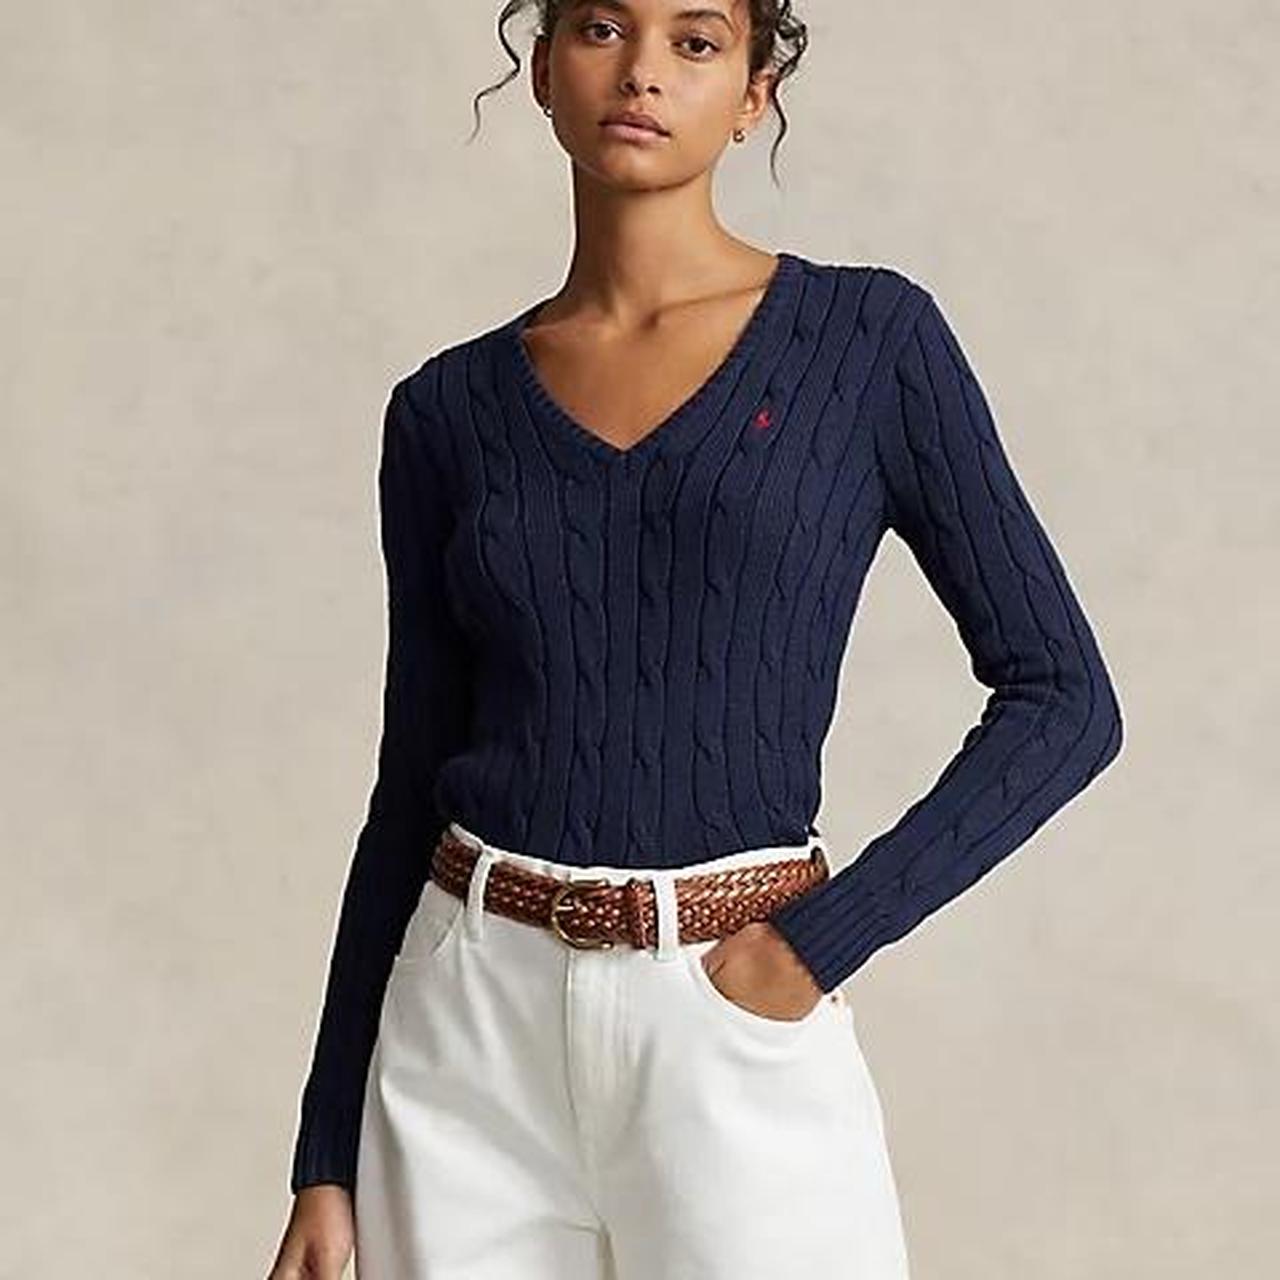 Polo Ralph Lauren - women’s cable knit cotton v neck... - Depop